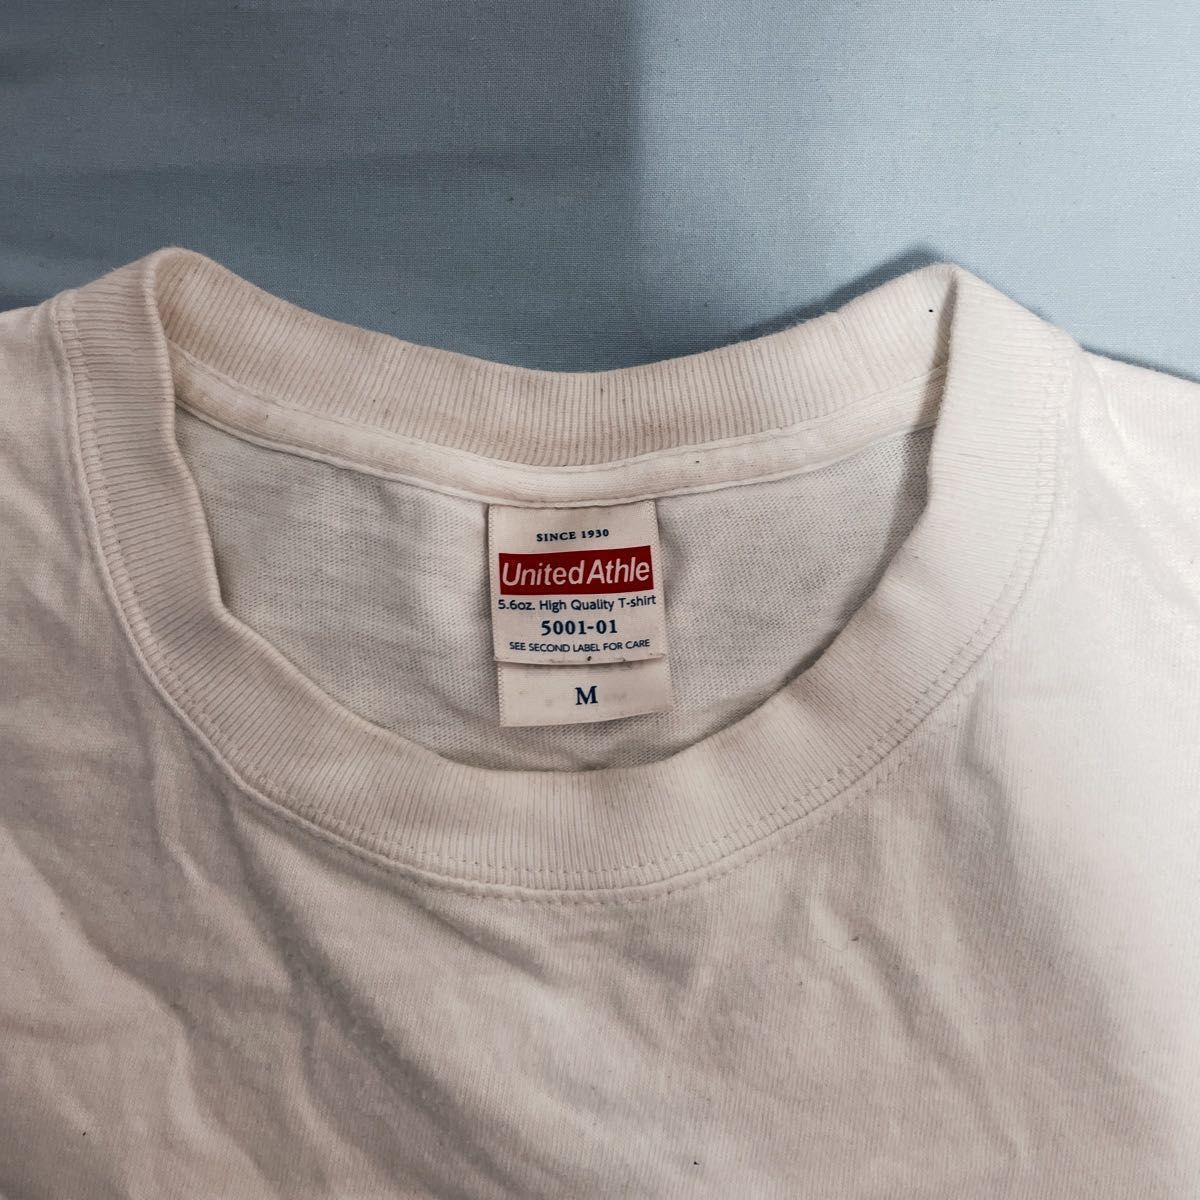 【大人気】UnitedAthle 5.6オンス ハイクオリティー Tシャツ 500101 メンズ Mサイズ 白 半袖×5枚組